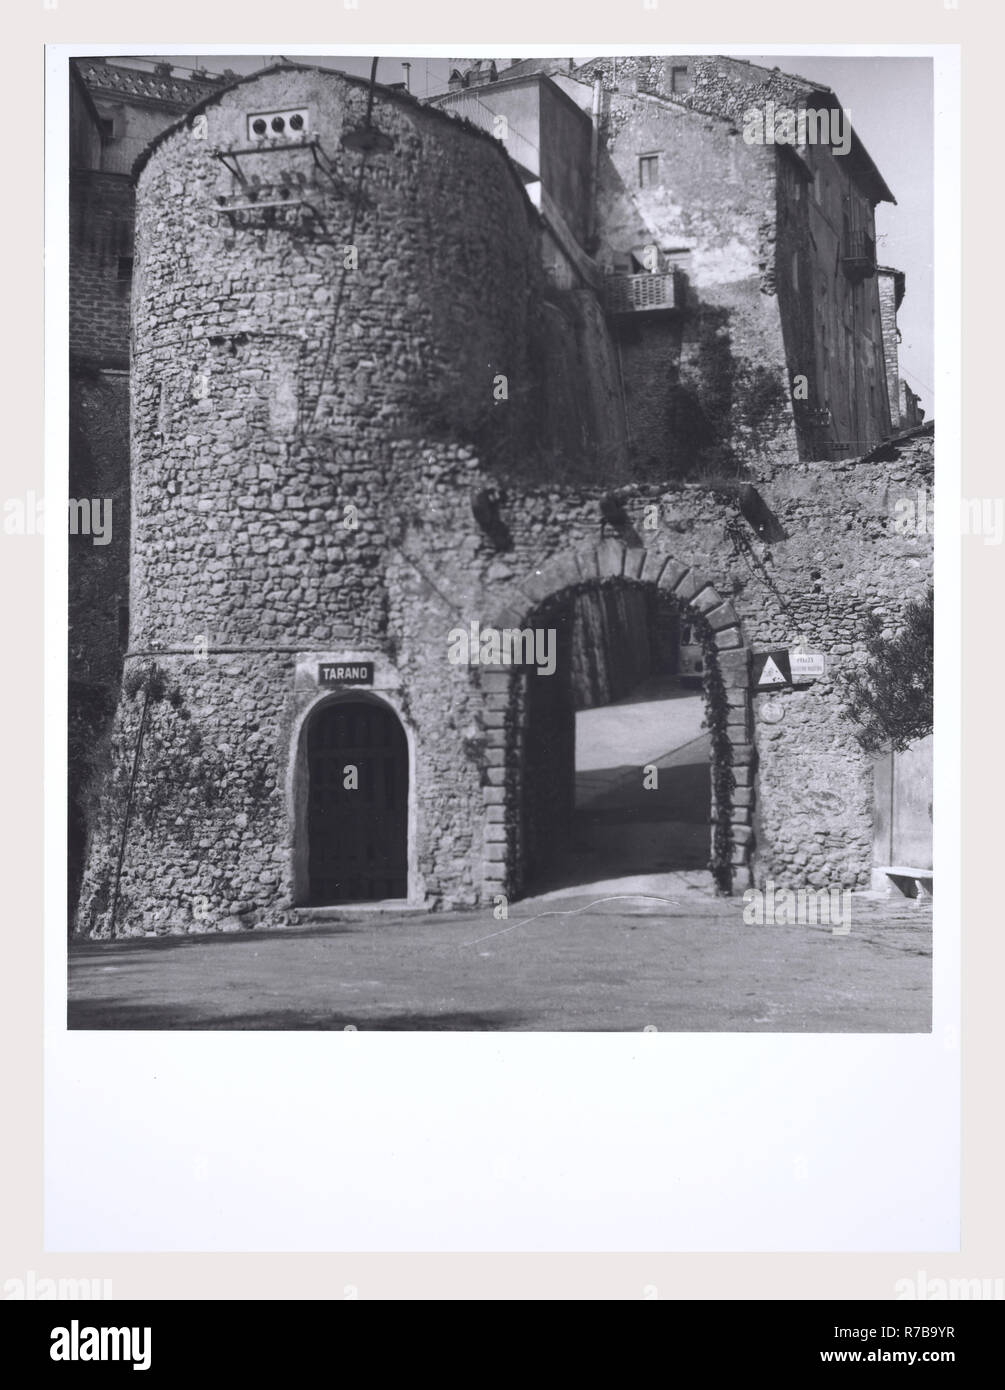 Rieti Lacio Tarano y vistas panorámicas de la ciudad, este es mi Italia, el país de la historia visual, Post-medieval Foto de stock